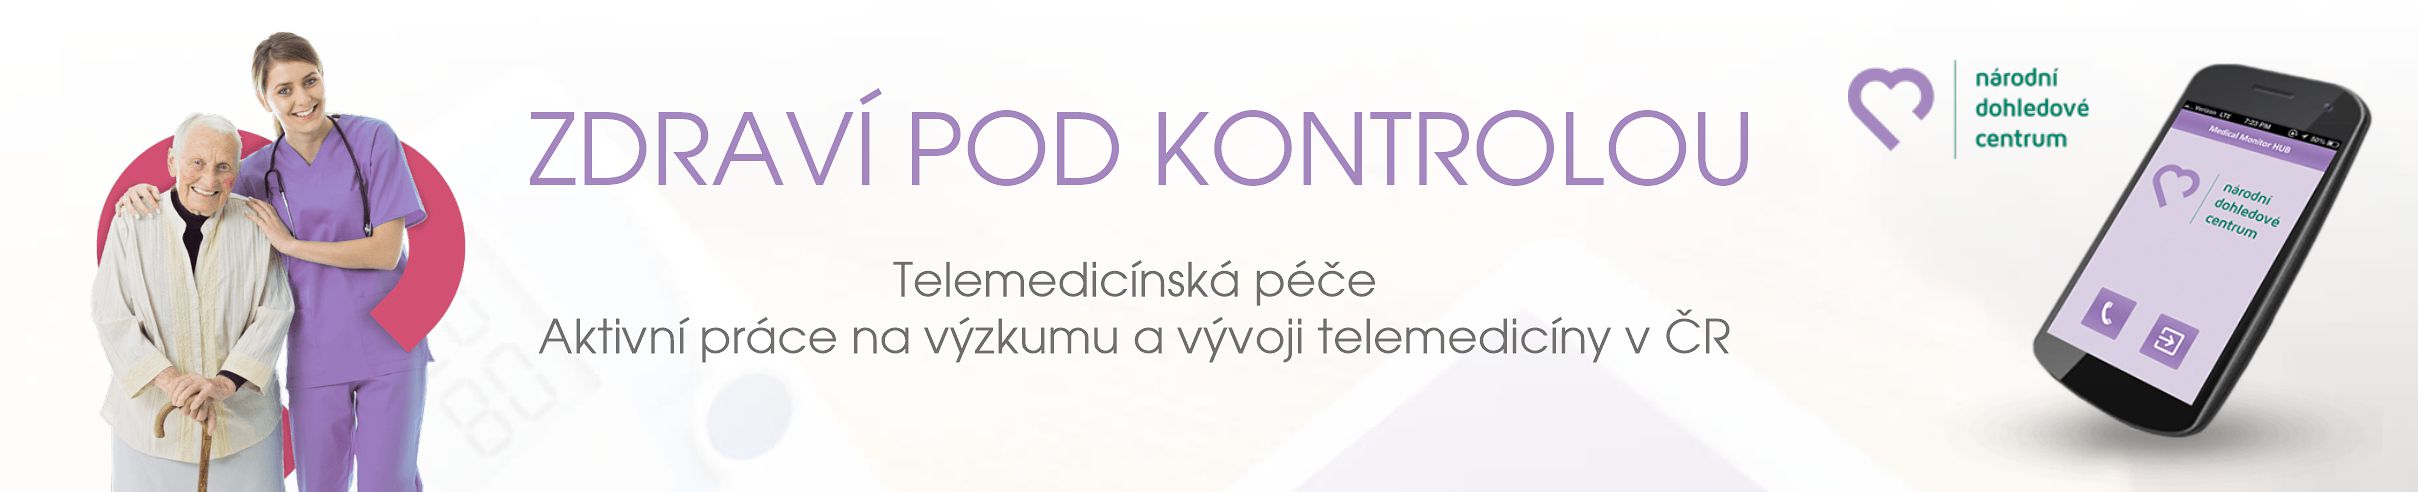 Národní dohledové centrum NCTS - Telemedicínská péče Aktivní práce na výzkumu a vývoji telemedicíny v ČR - zobrazit web